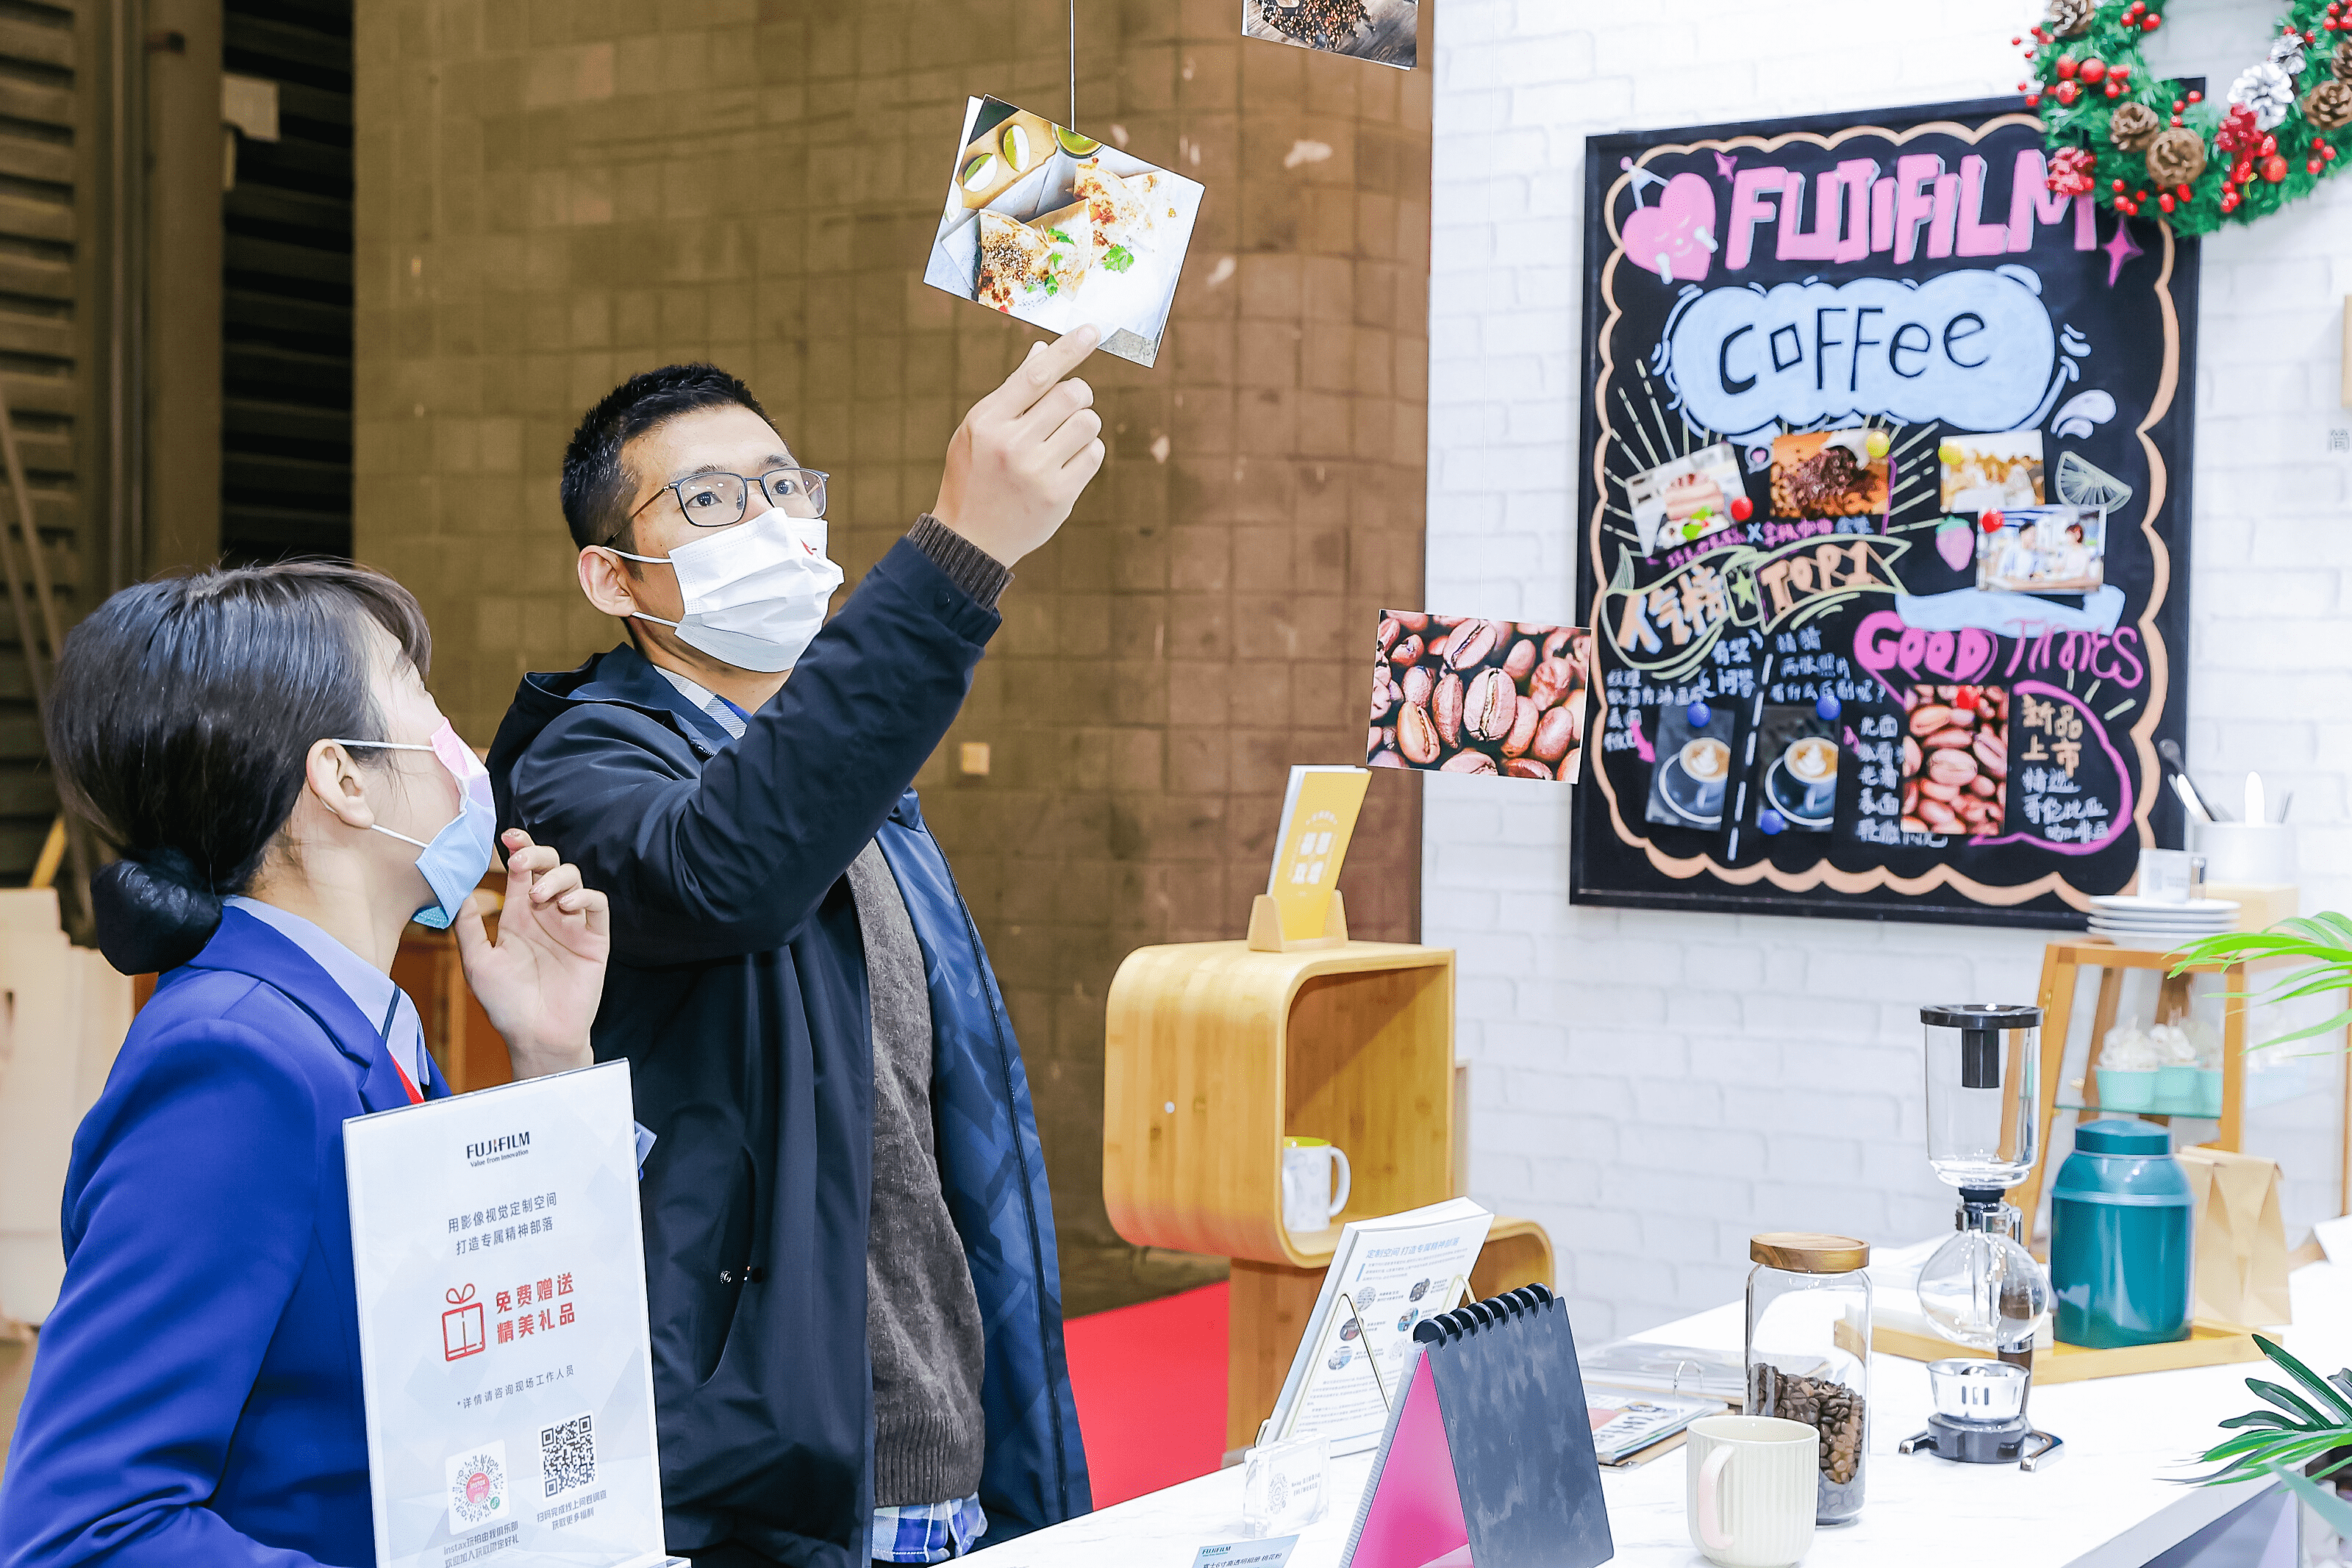 定制完美色彩解决方案 富士胶片亮相上海国际连锁加盟展览会